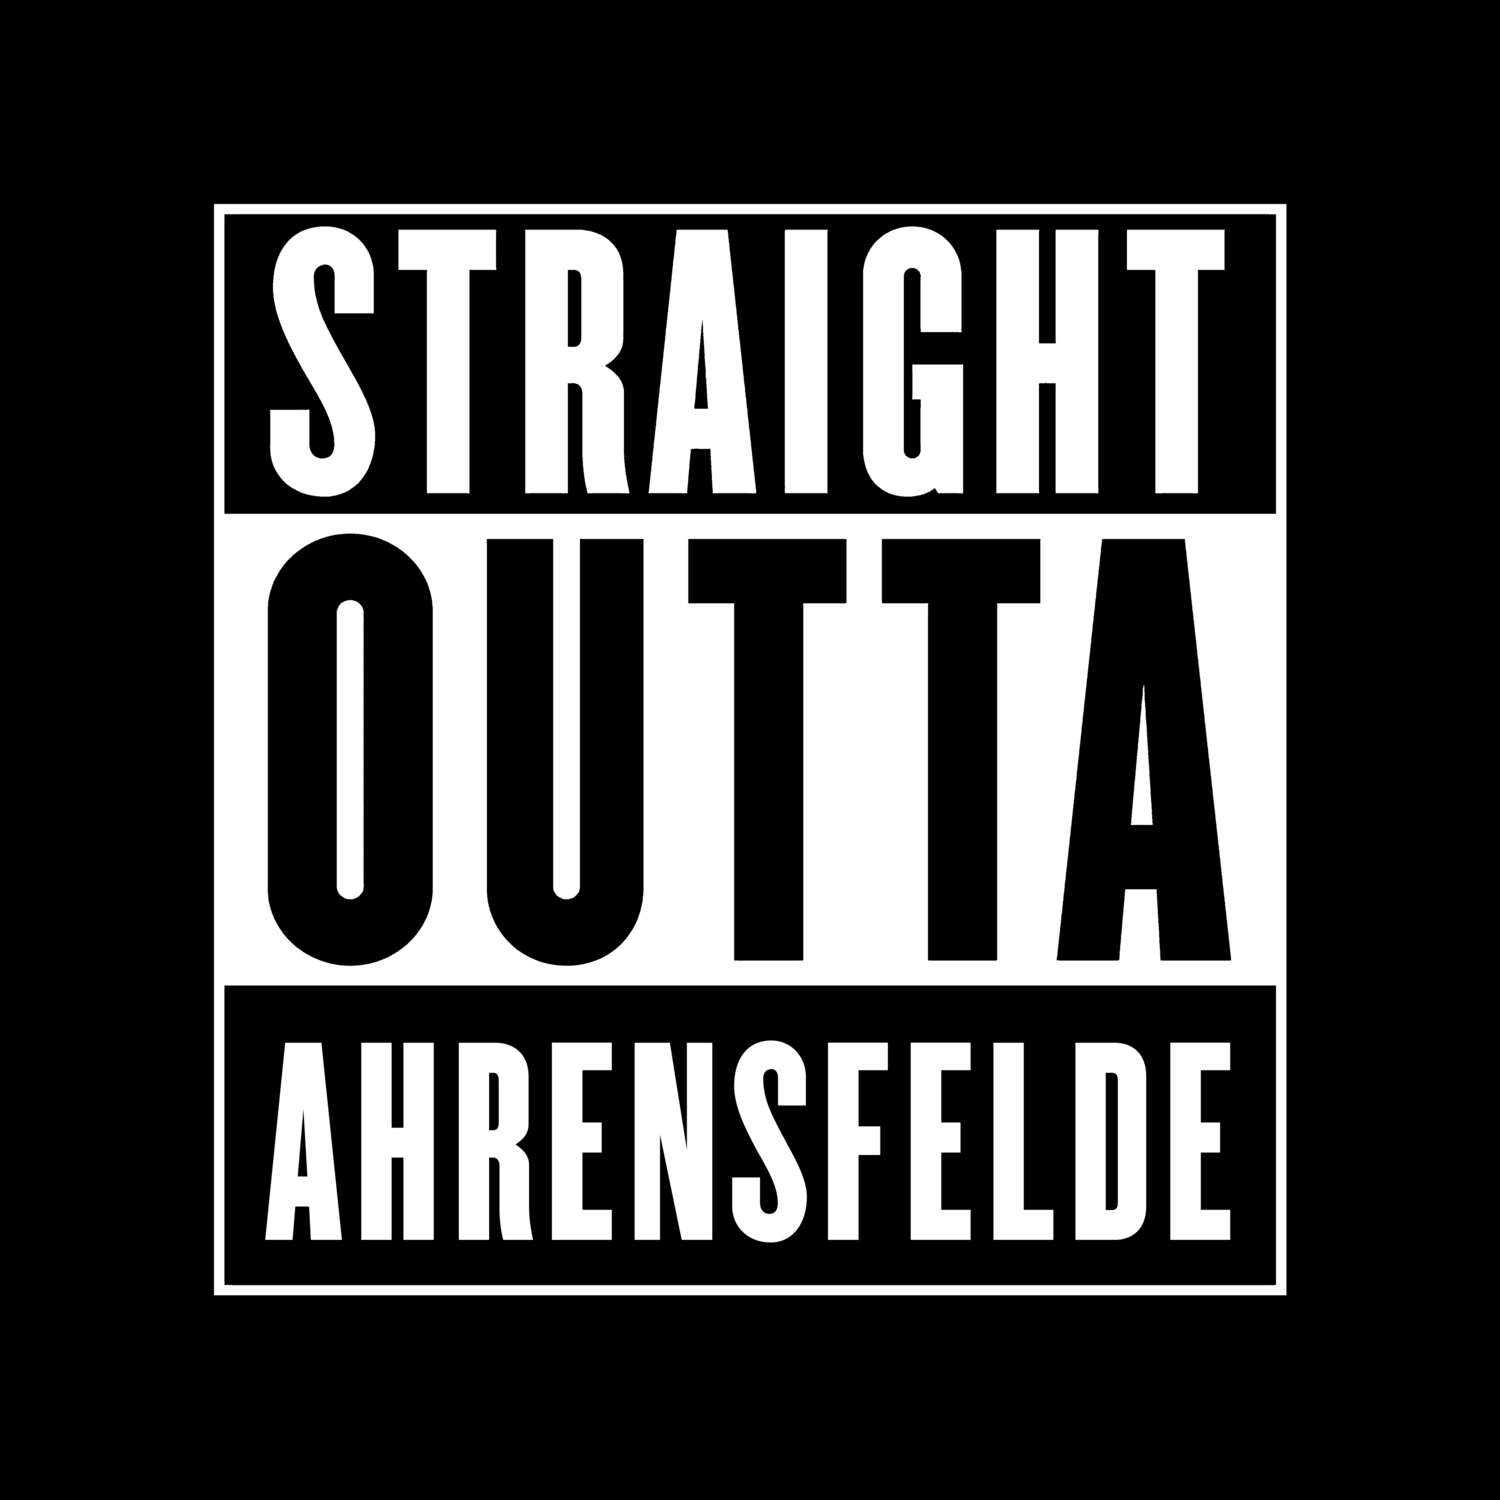 Ahrensfelde T-Shirt »Straight Outta«